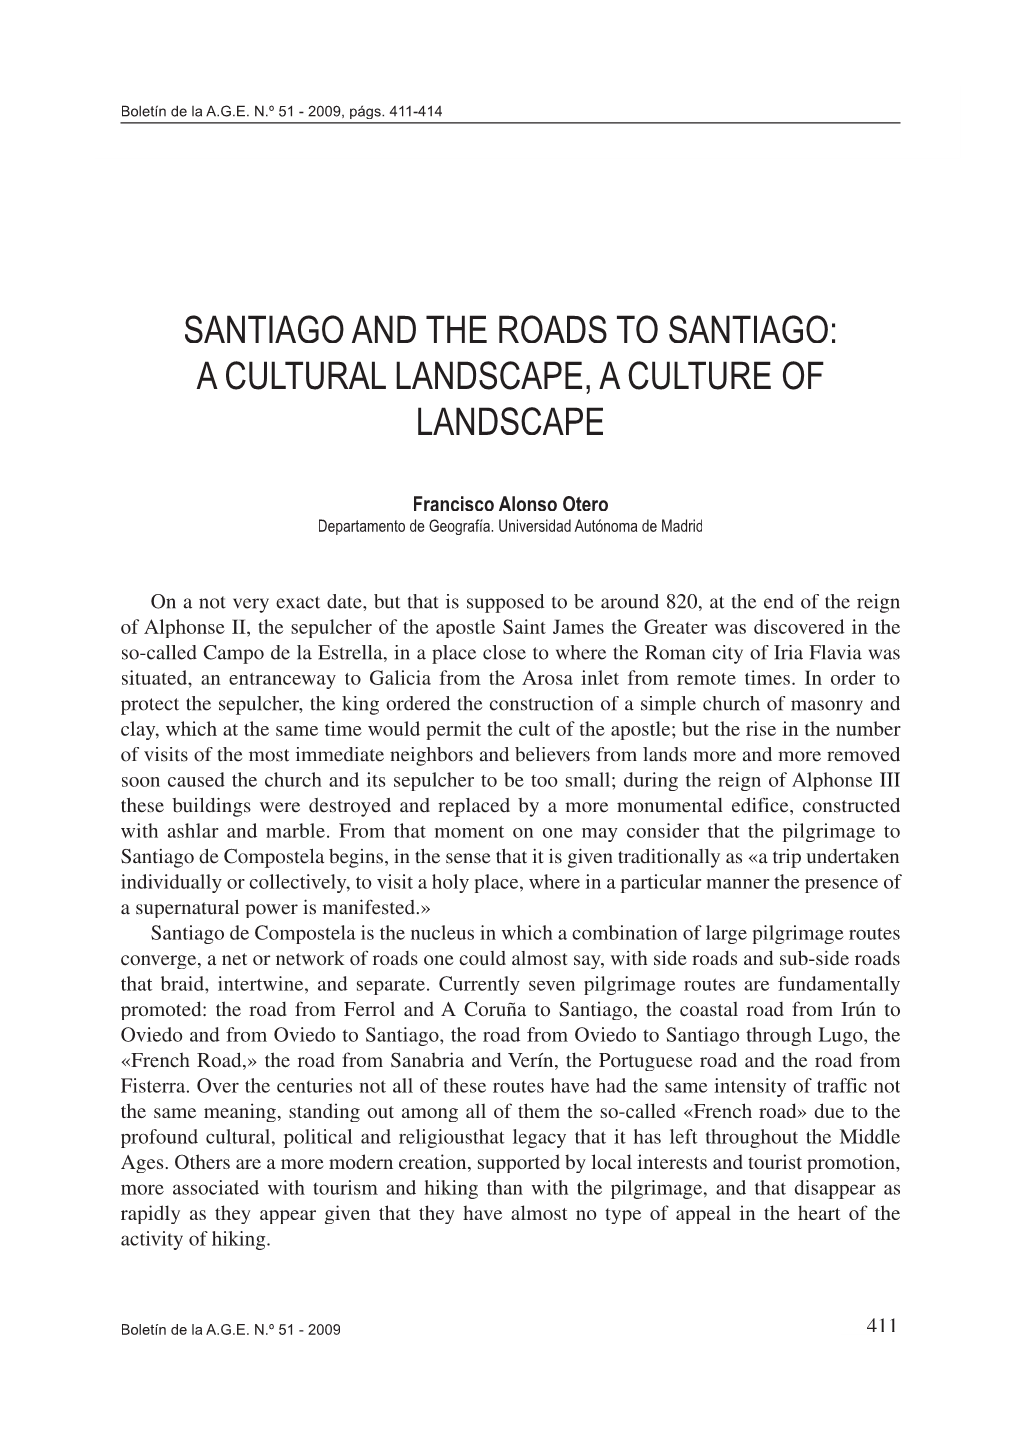 Santiago and the Roads to Santiago: a Cultural Landscape, a Culture of Landscape